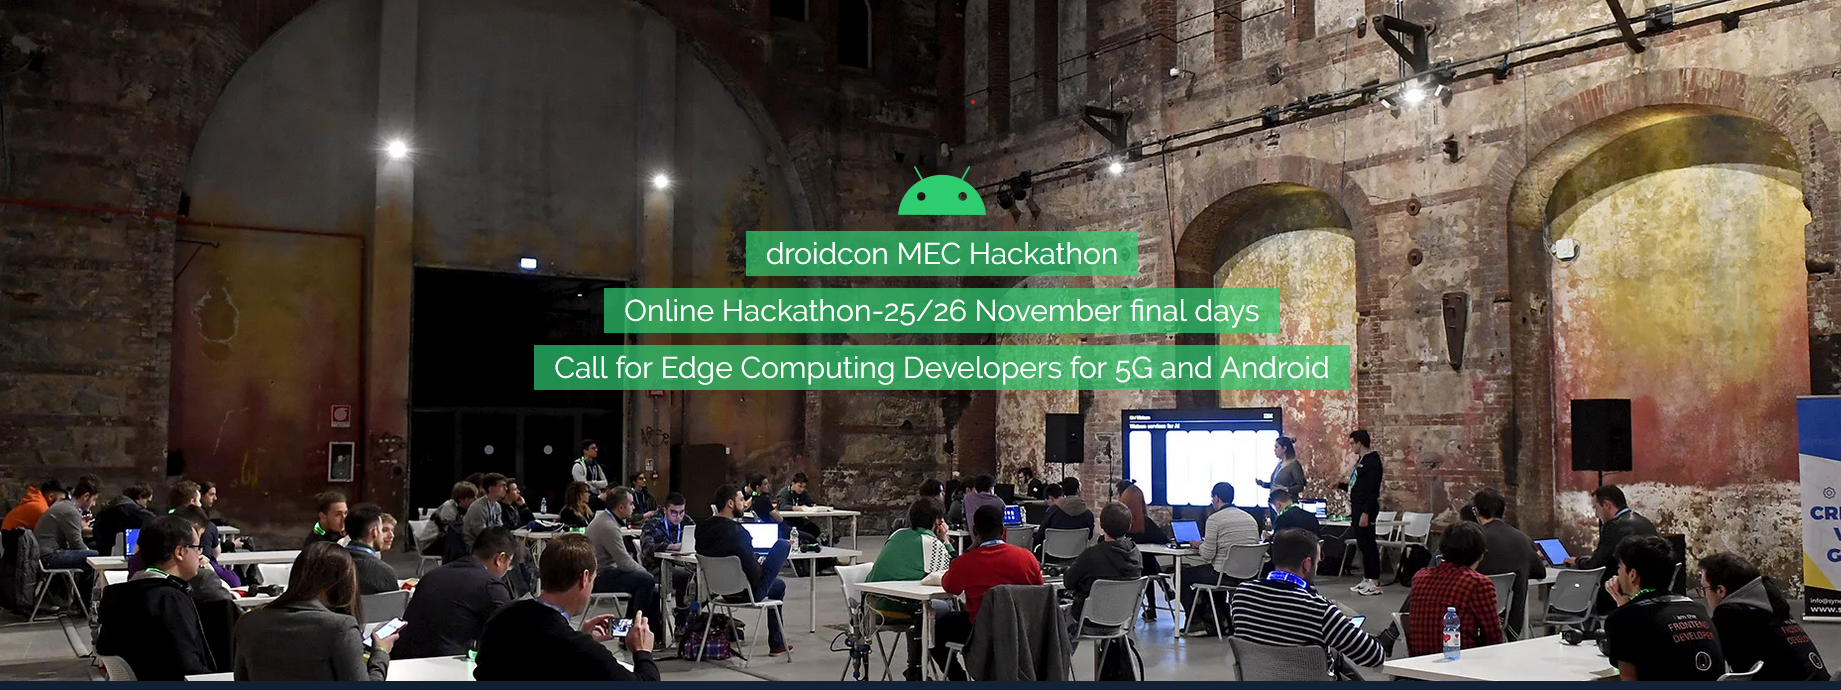 Droidcon hackathon 2020.png